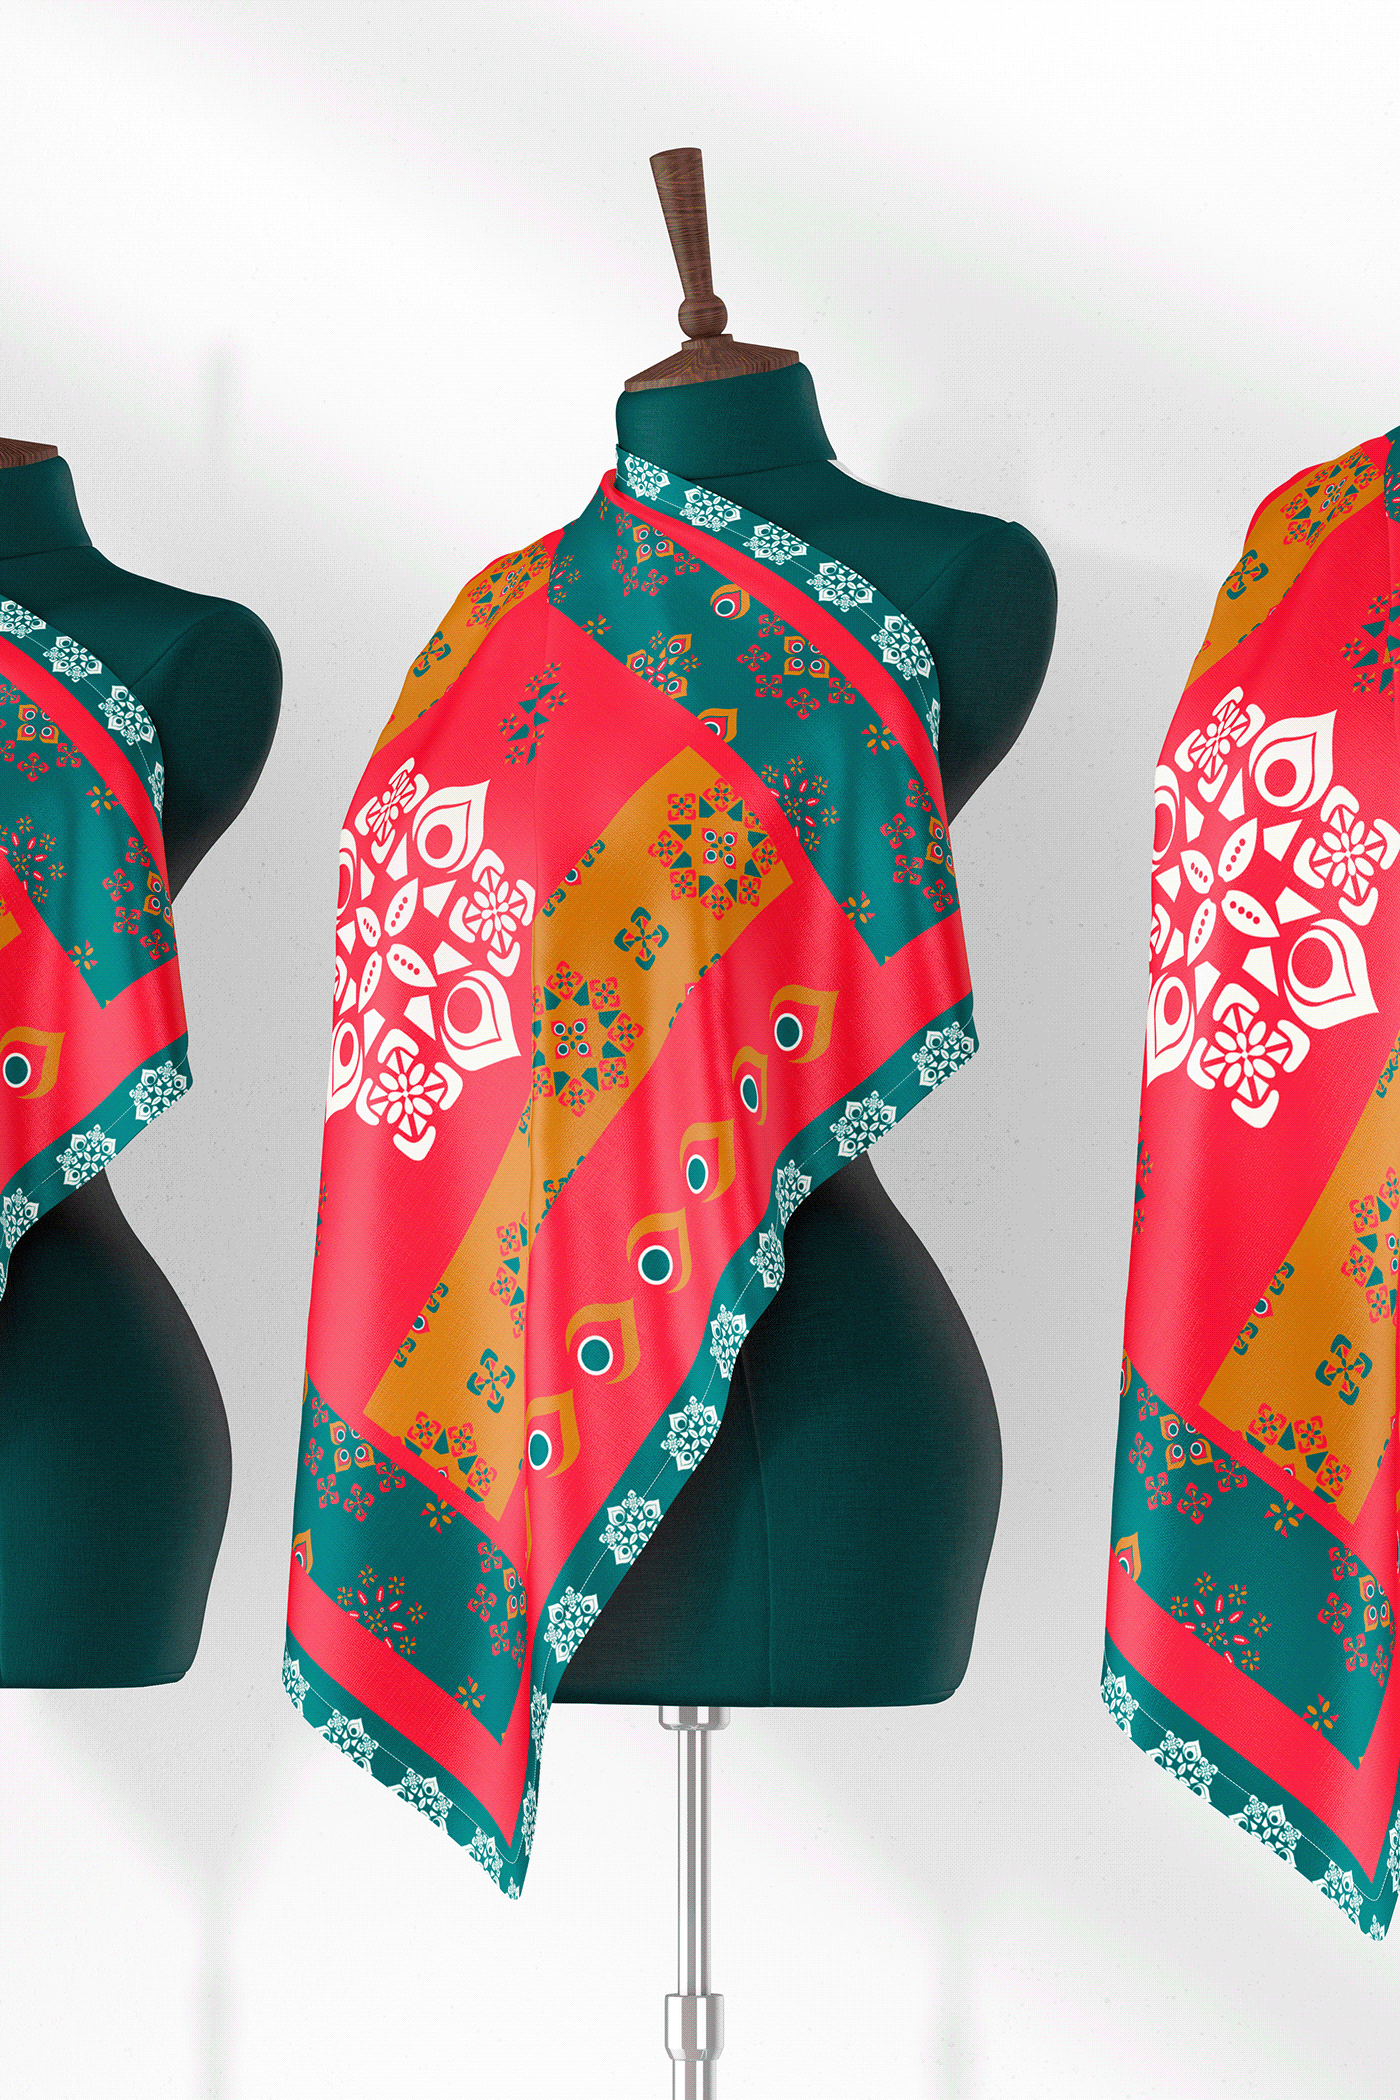 pattern pattren design scarf scarfdesign scarves Scarves design Scarves Textile Design textile textile art textile design 